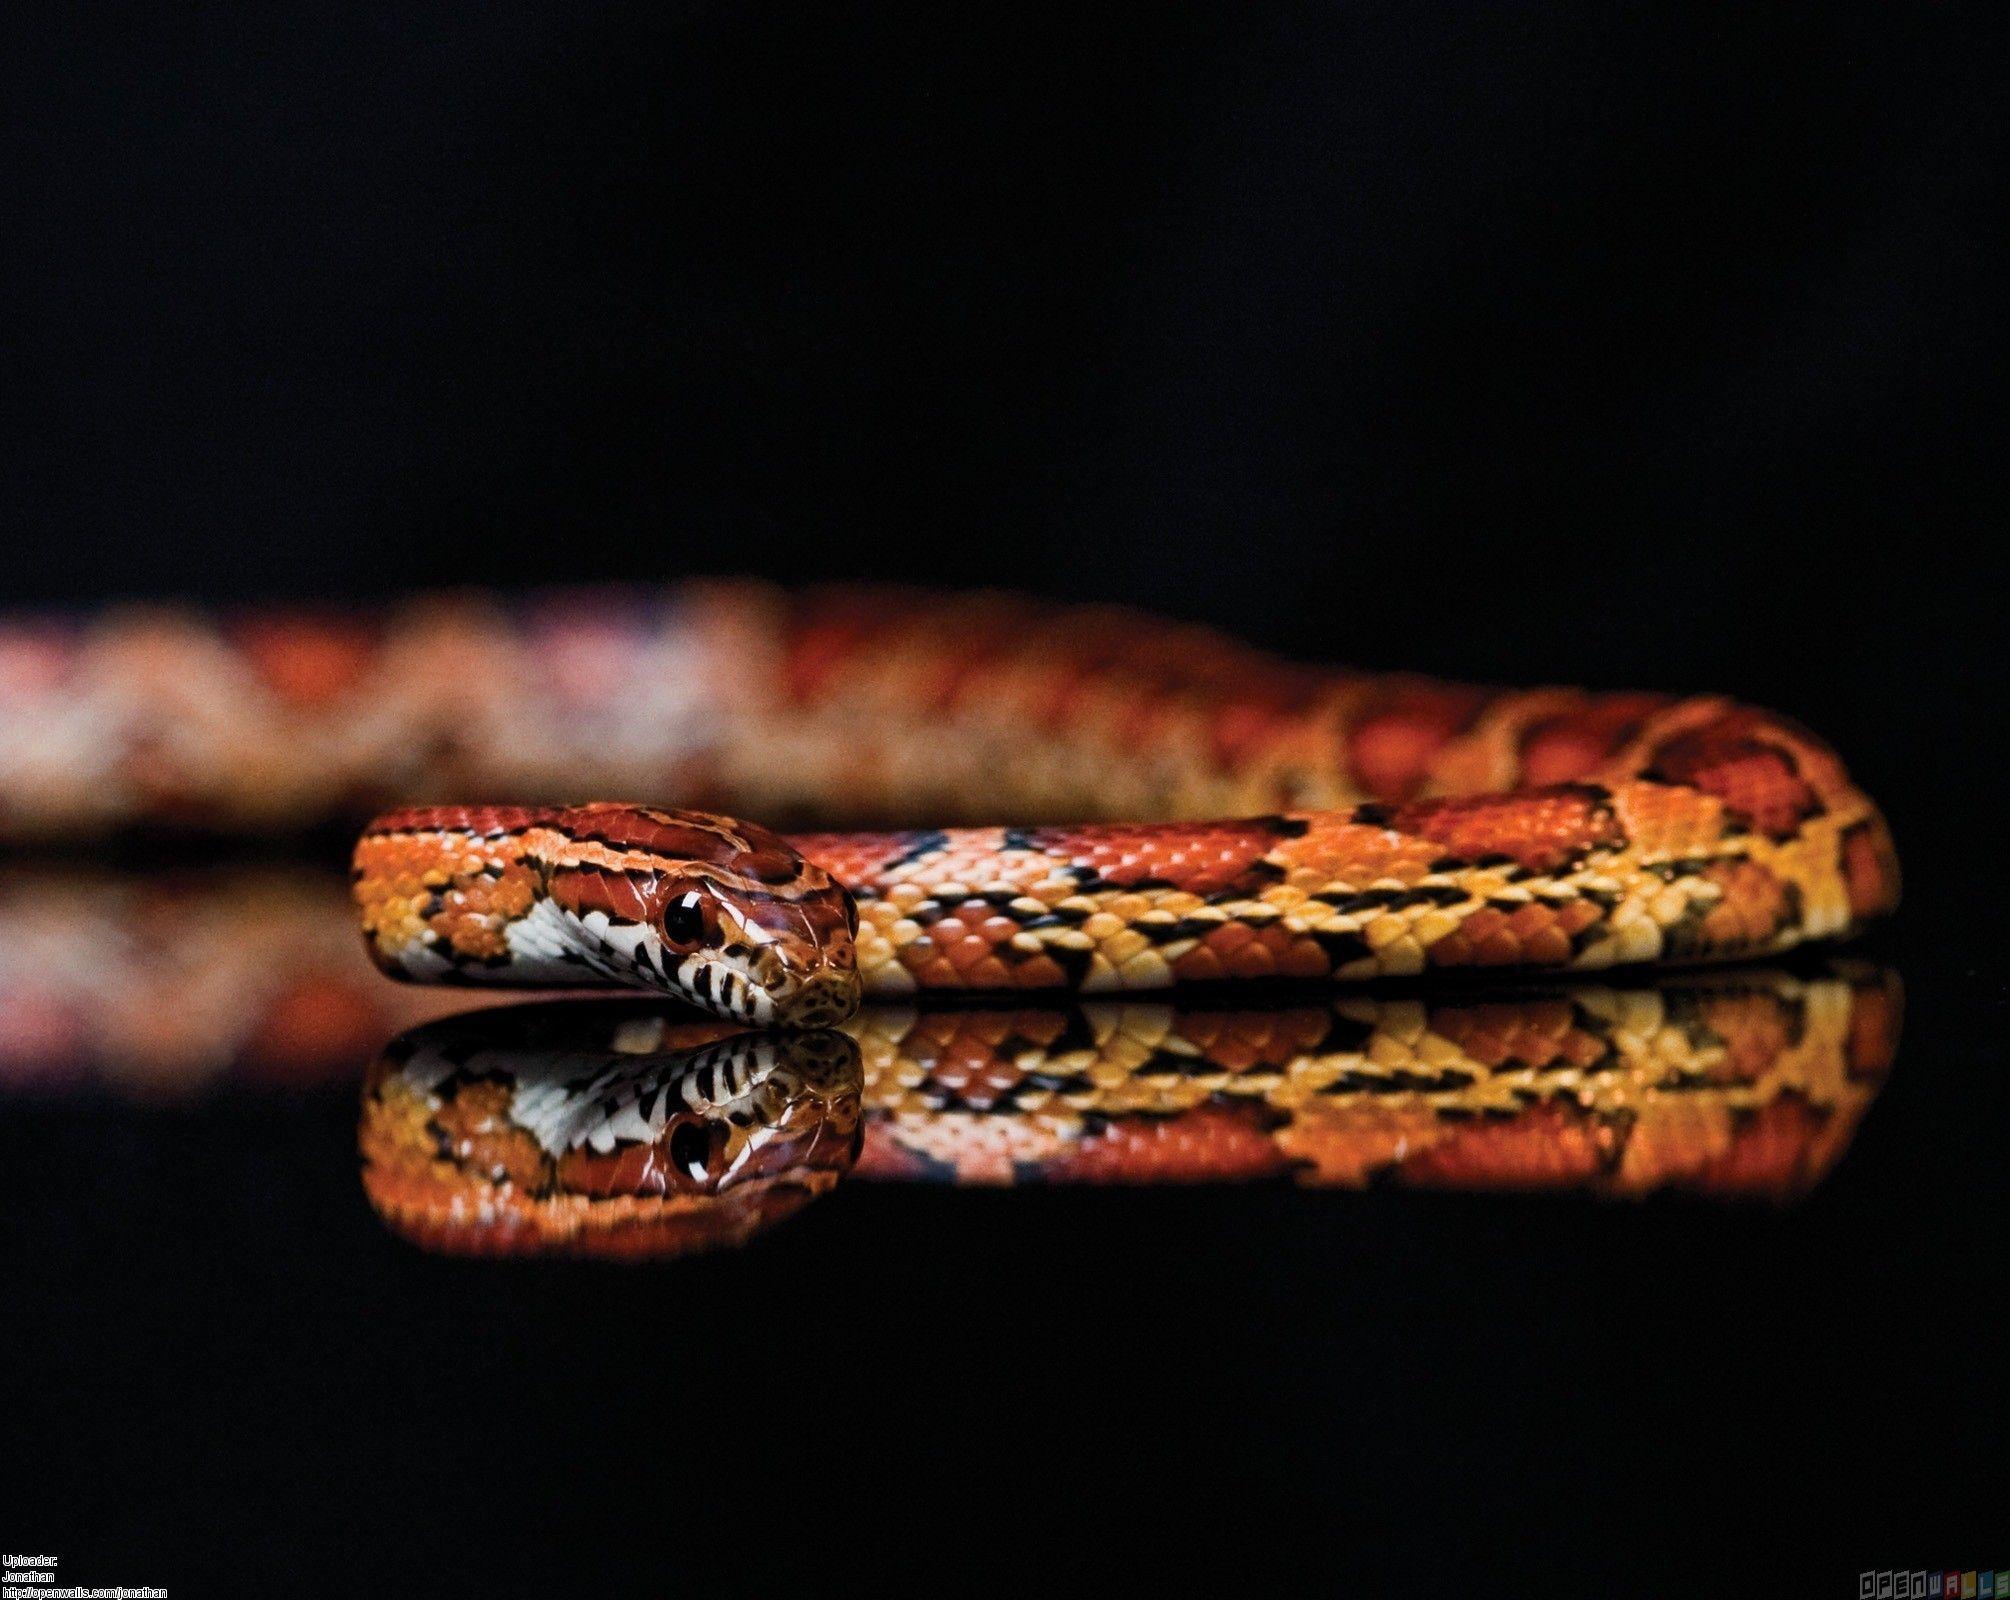 mirrored snake. Snakes. Corn snake, Snake wallpaper, Snake